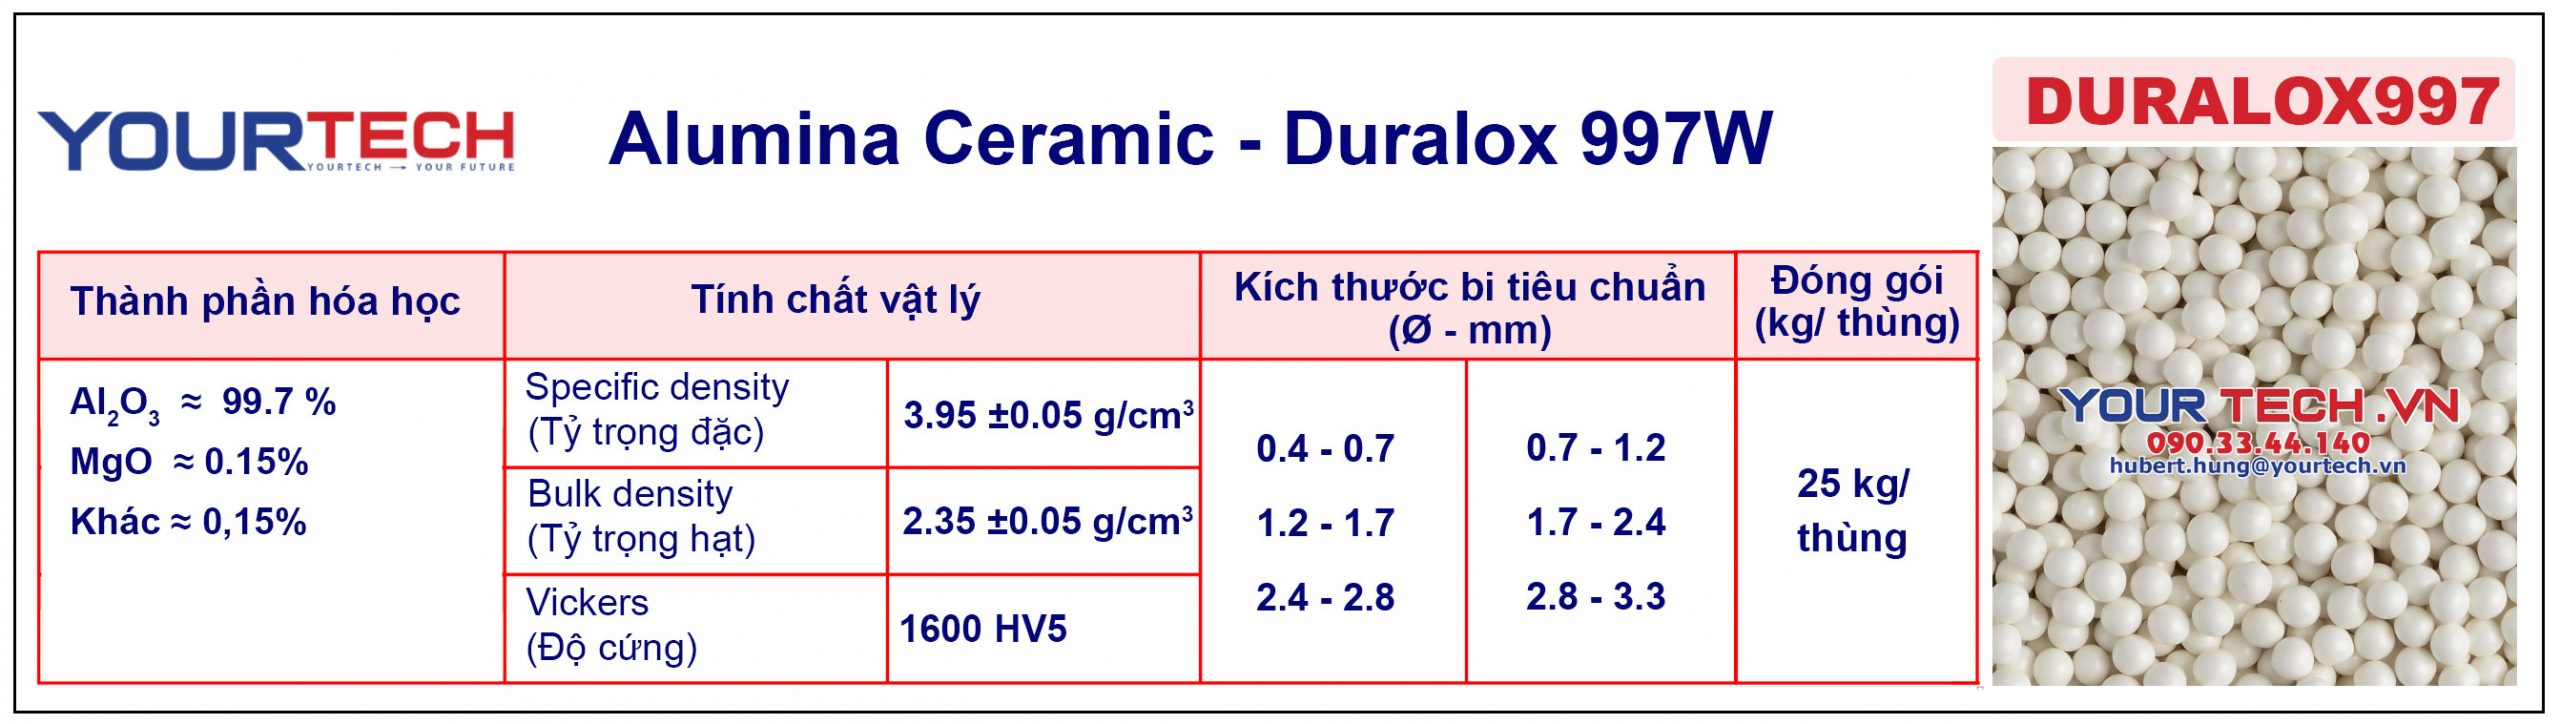 Thông số kỹ thuật Bi nghiền alumina ceramic - Duralox 997W